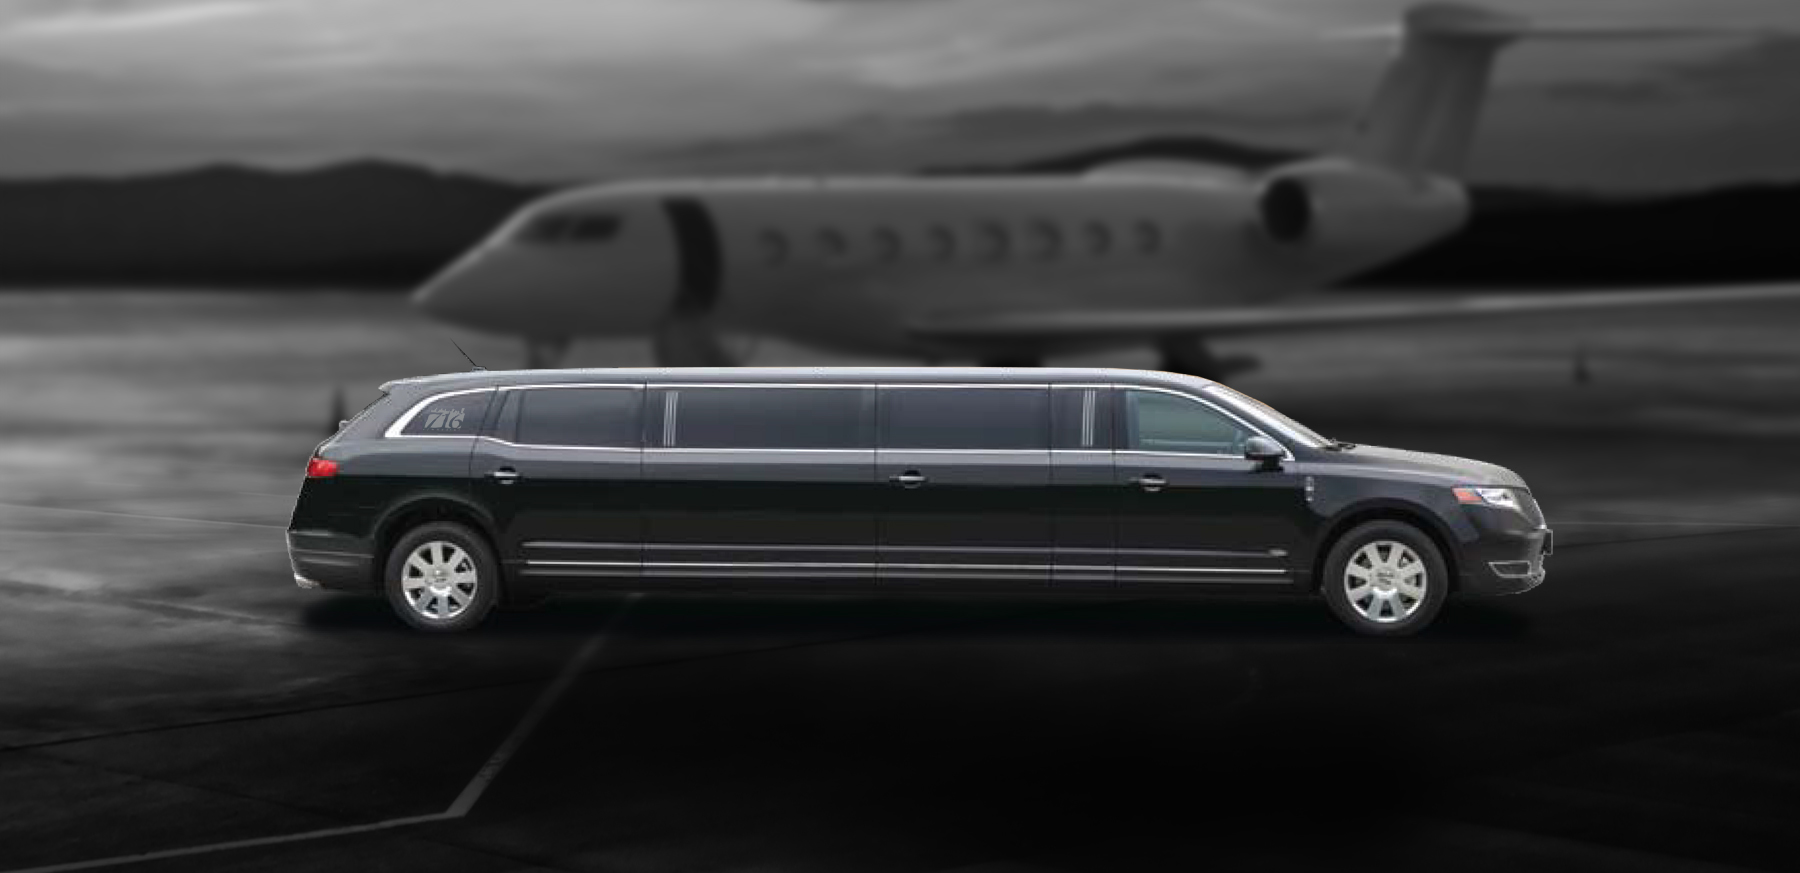 716 Limousine Fleet - 7 pax stretch limousines